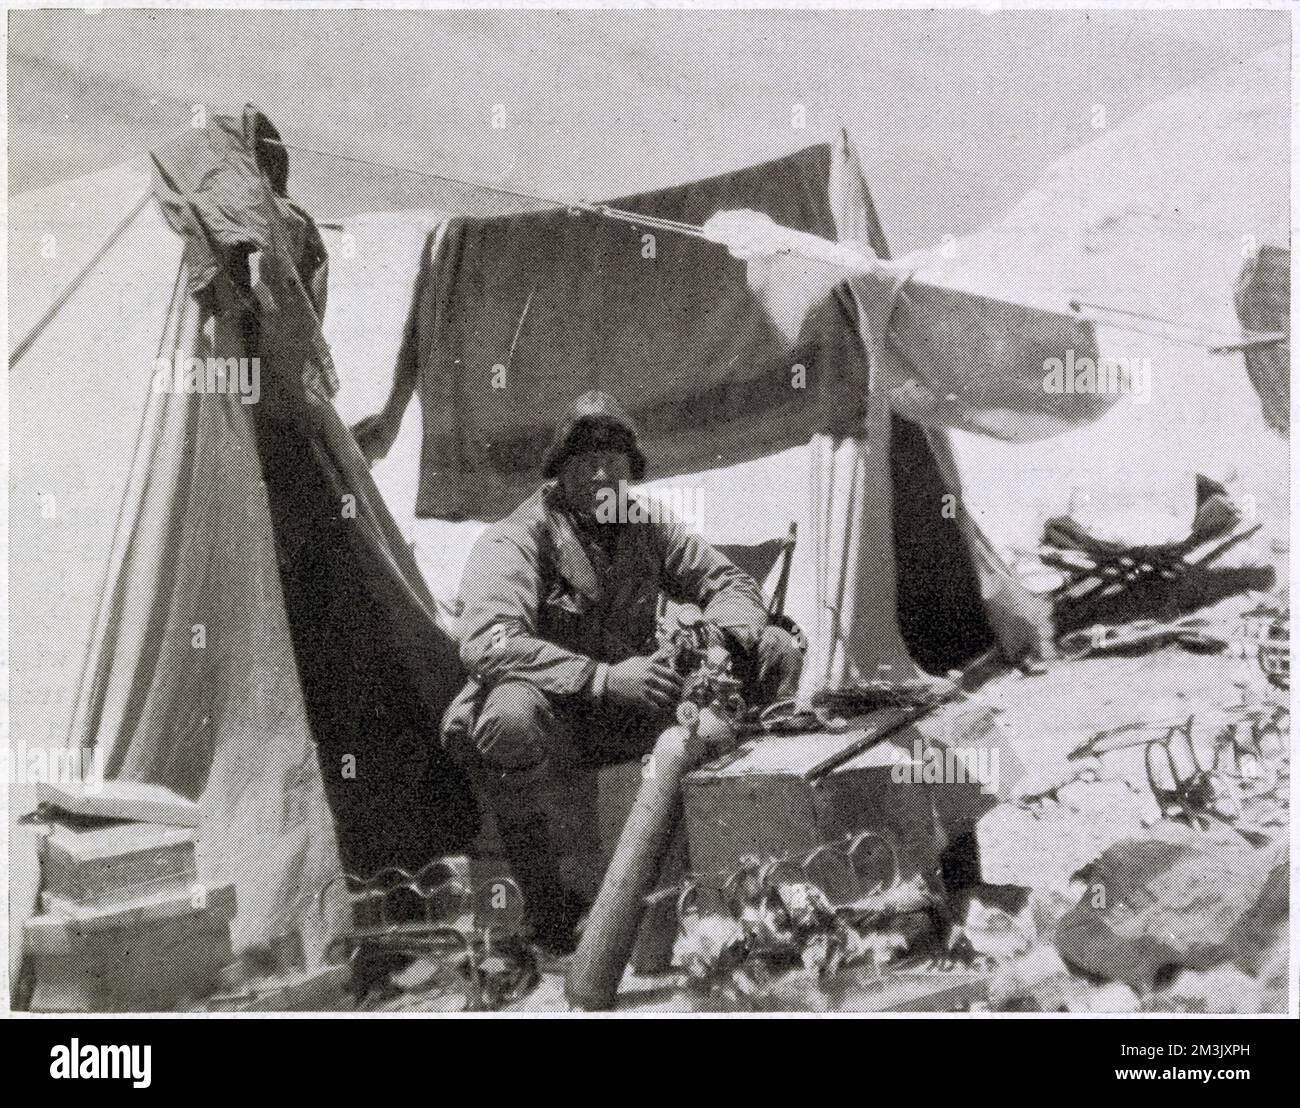 Andrew Comyn Irvine (1902-24), britischer Bergsteiger, arbeitet an einer Sauerstoffflasche im Everest Expeditionslager 1924. Irvine, obwohl ein relativ unerfahrener Kletterer, war ein Experte in der Wartung und Reparatur von Sauerstofftanks, und wegen dieser Fähigkeit wurde er ausgewählt, George Leigh Mallory für ihren tödlichen Anschlag auf den Everest zu begleiten. Stockfoto